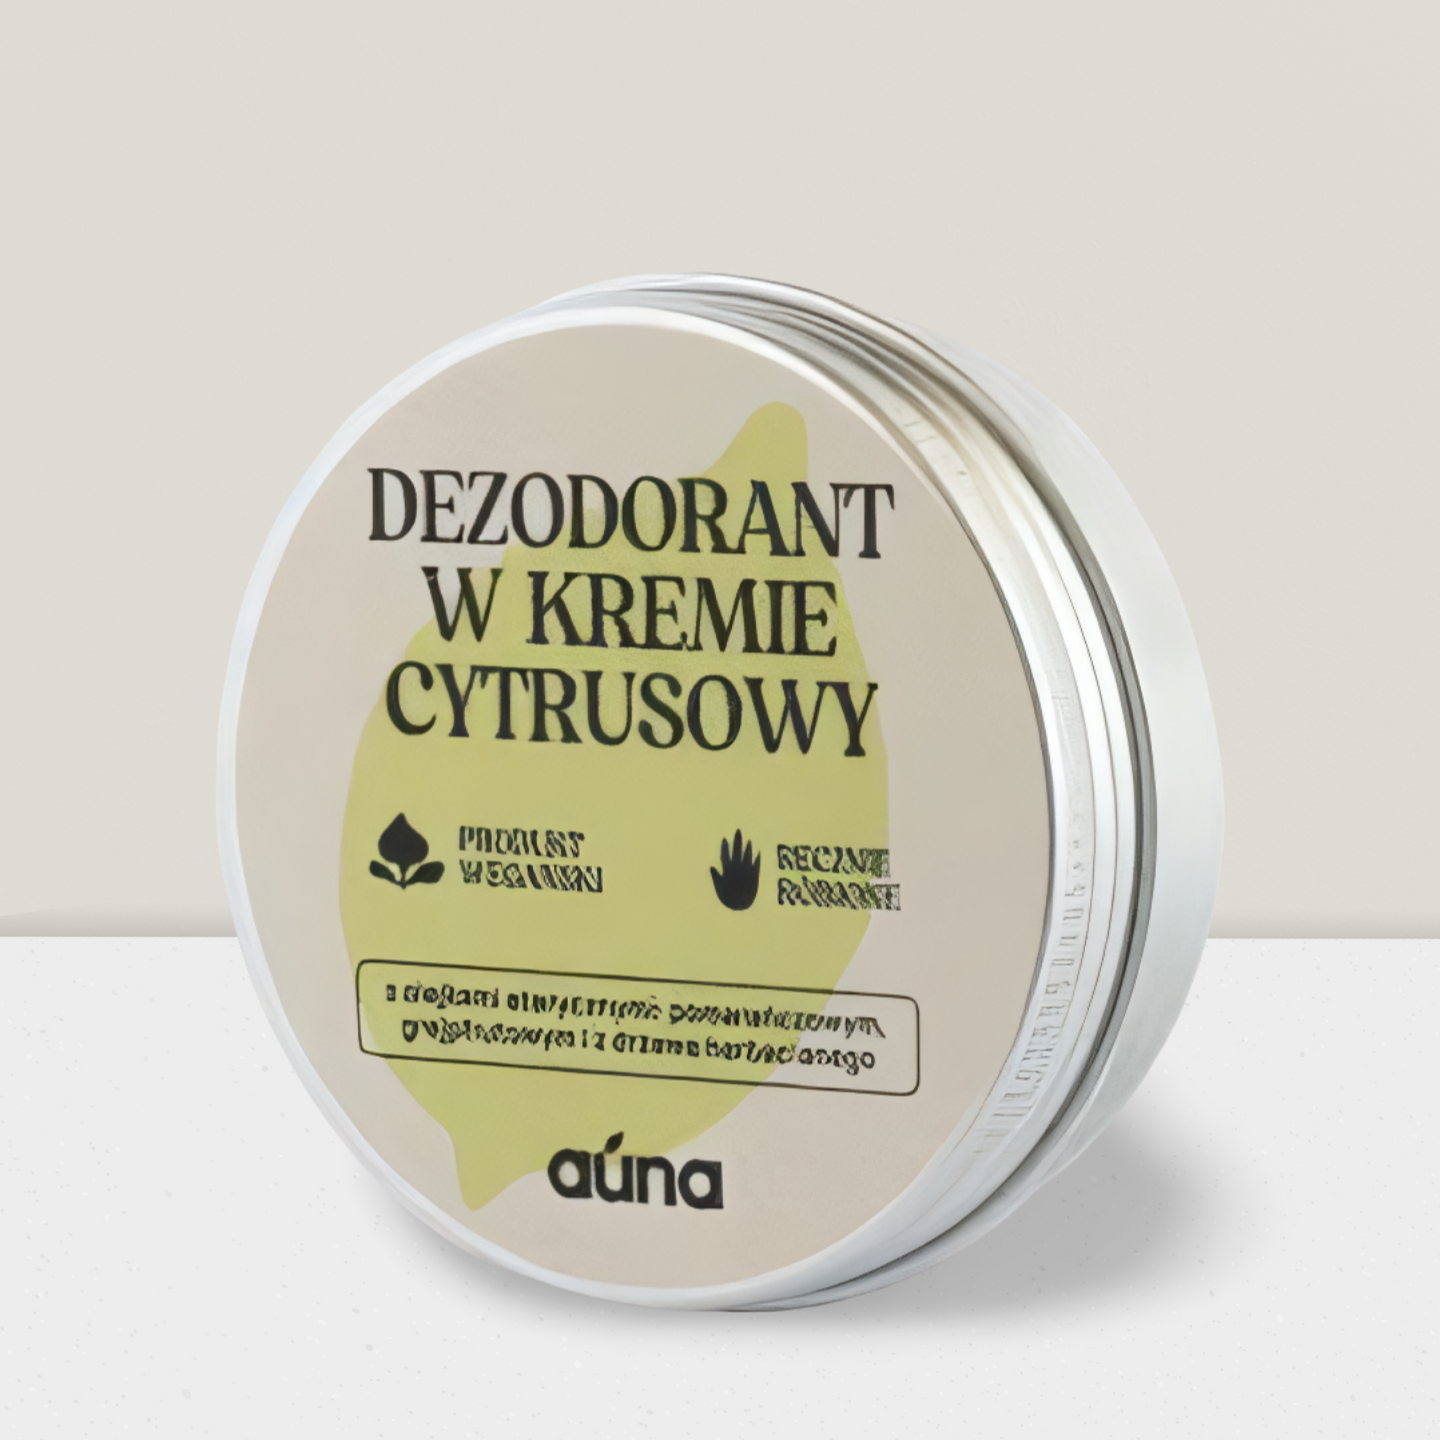 Auna Vegan - Dezodorant w kremie Cytrusowy - 60 ml z olejkiem grejpfrutowym i pomarańczowym - Data - 06/24